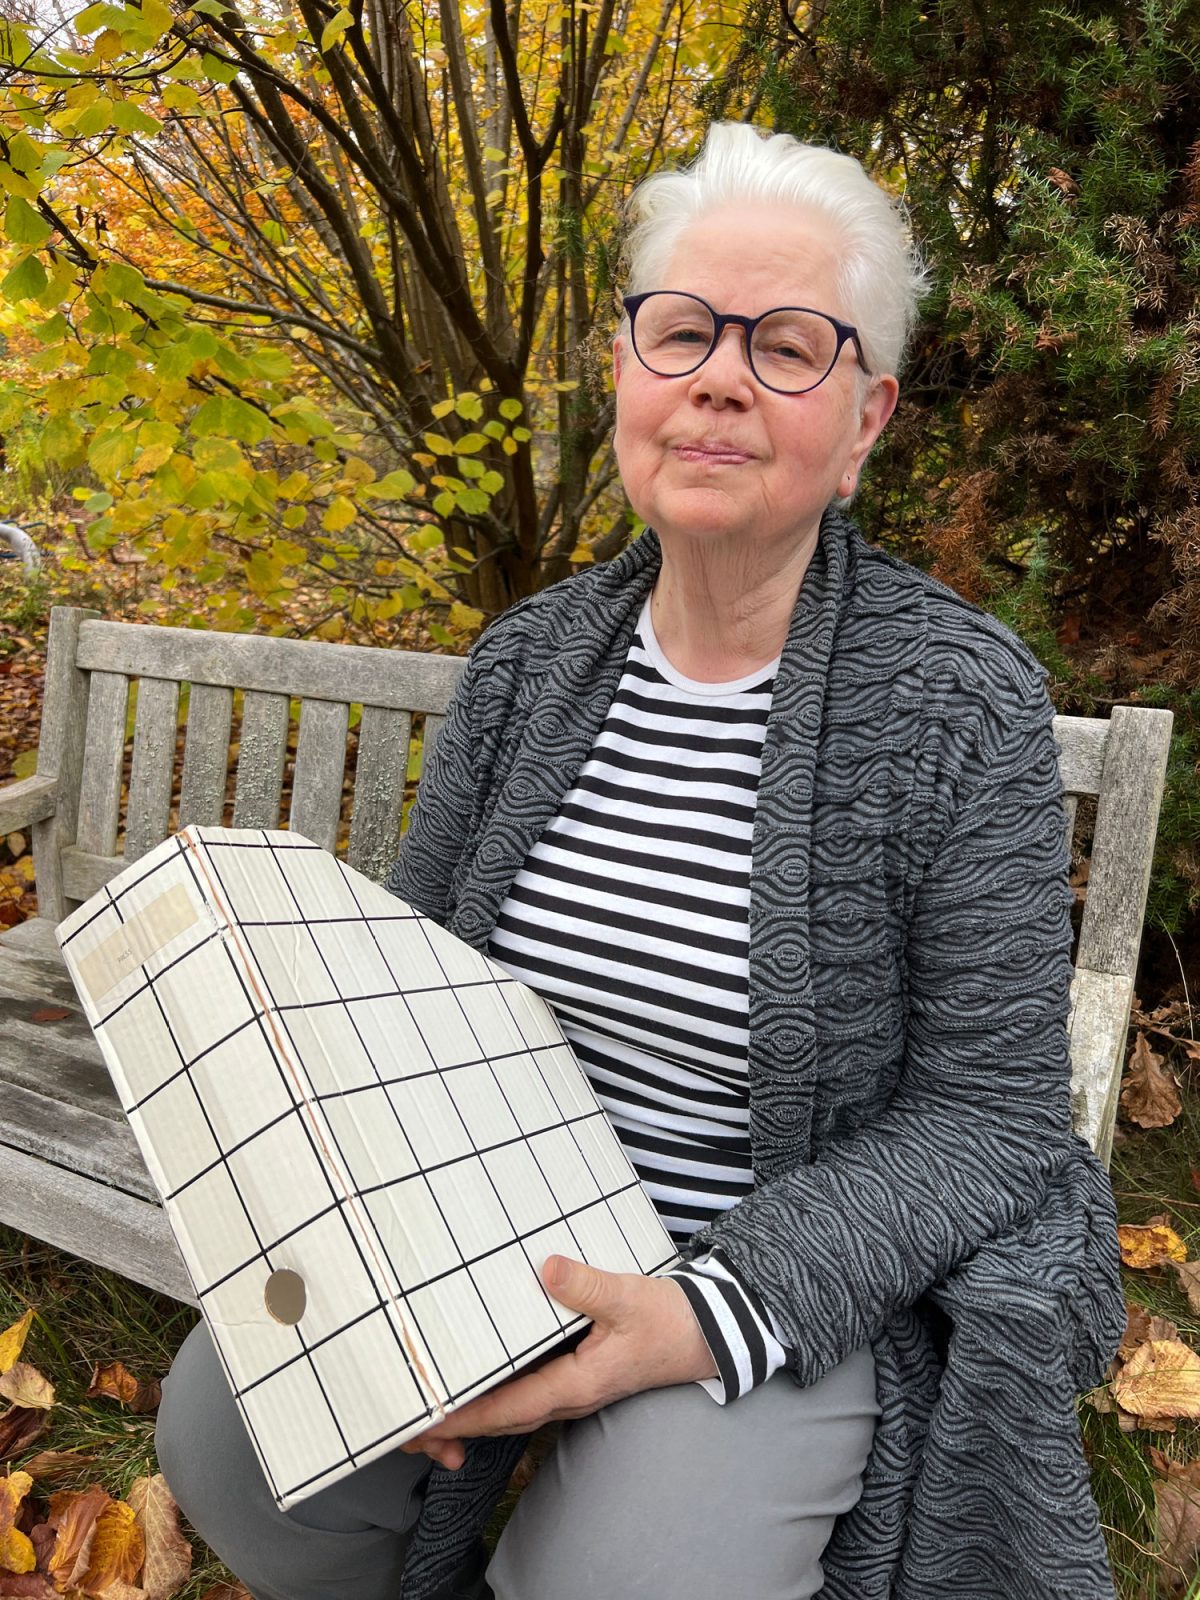 Vithårig kvinna i grå kofta och randig tröja sitter på bänk och håller i tidskriftssamlare med svart-vit-rutigt mönster.